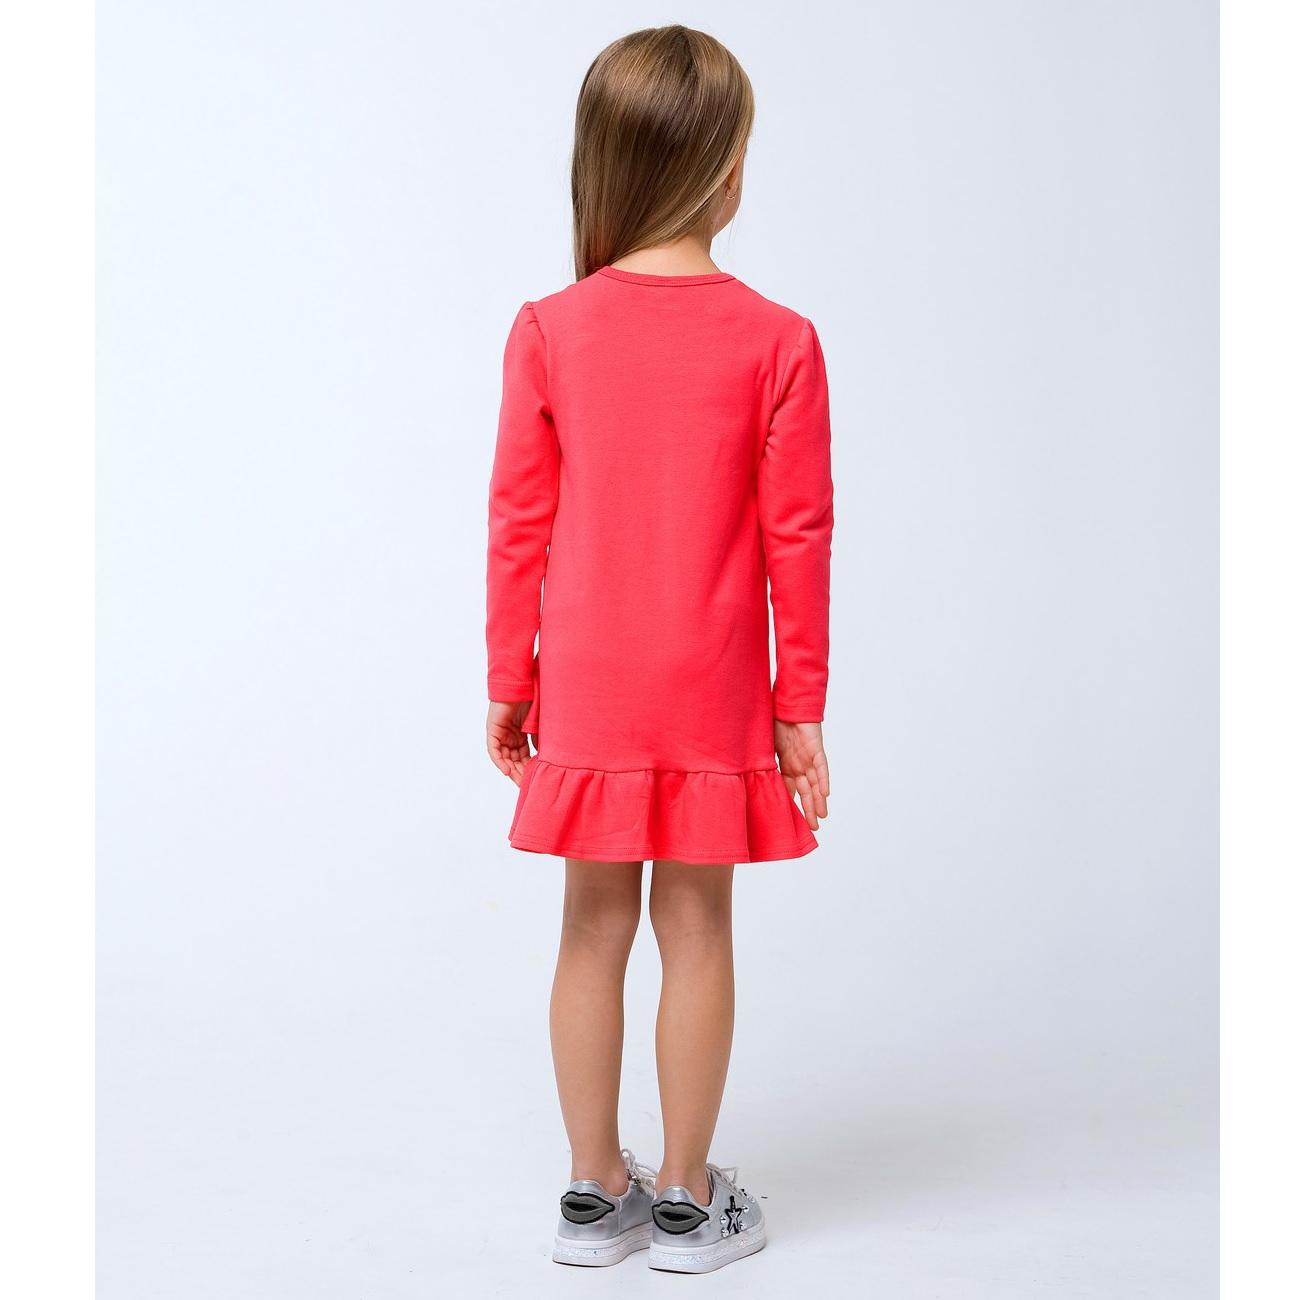 Дитяча сукня для дівчинки \"Тільки для дівчаток\", рожевий корал (120256), Smil (Смил)